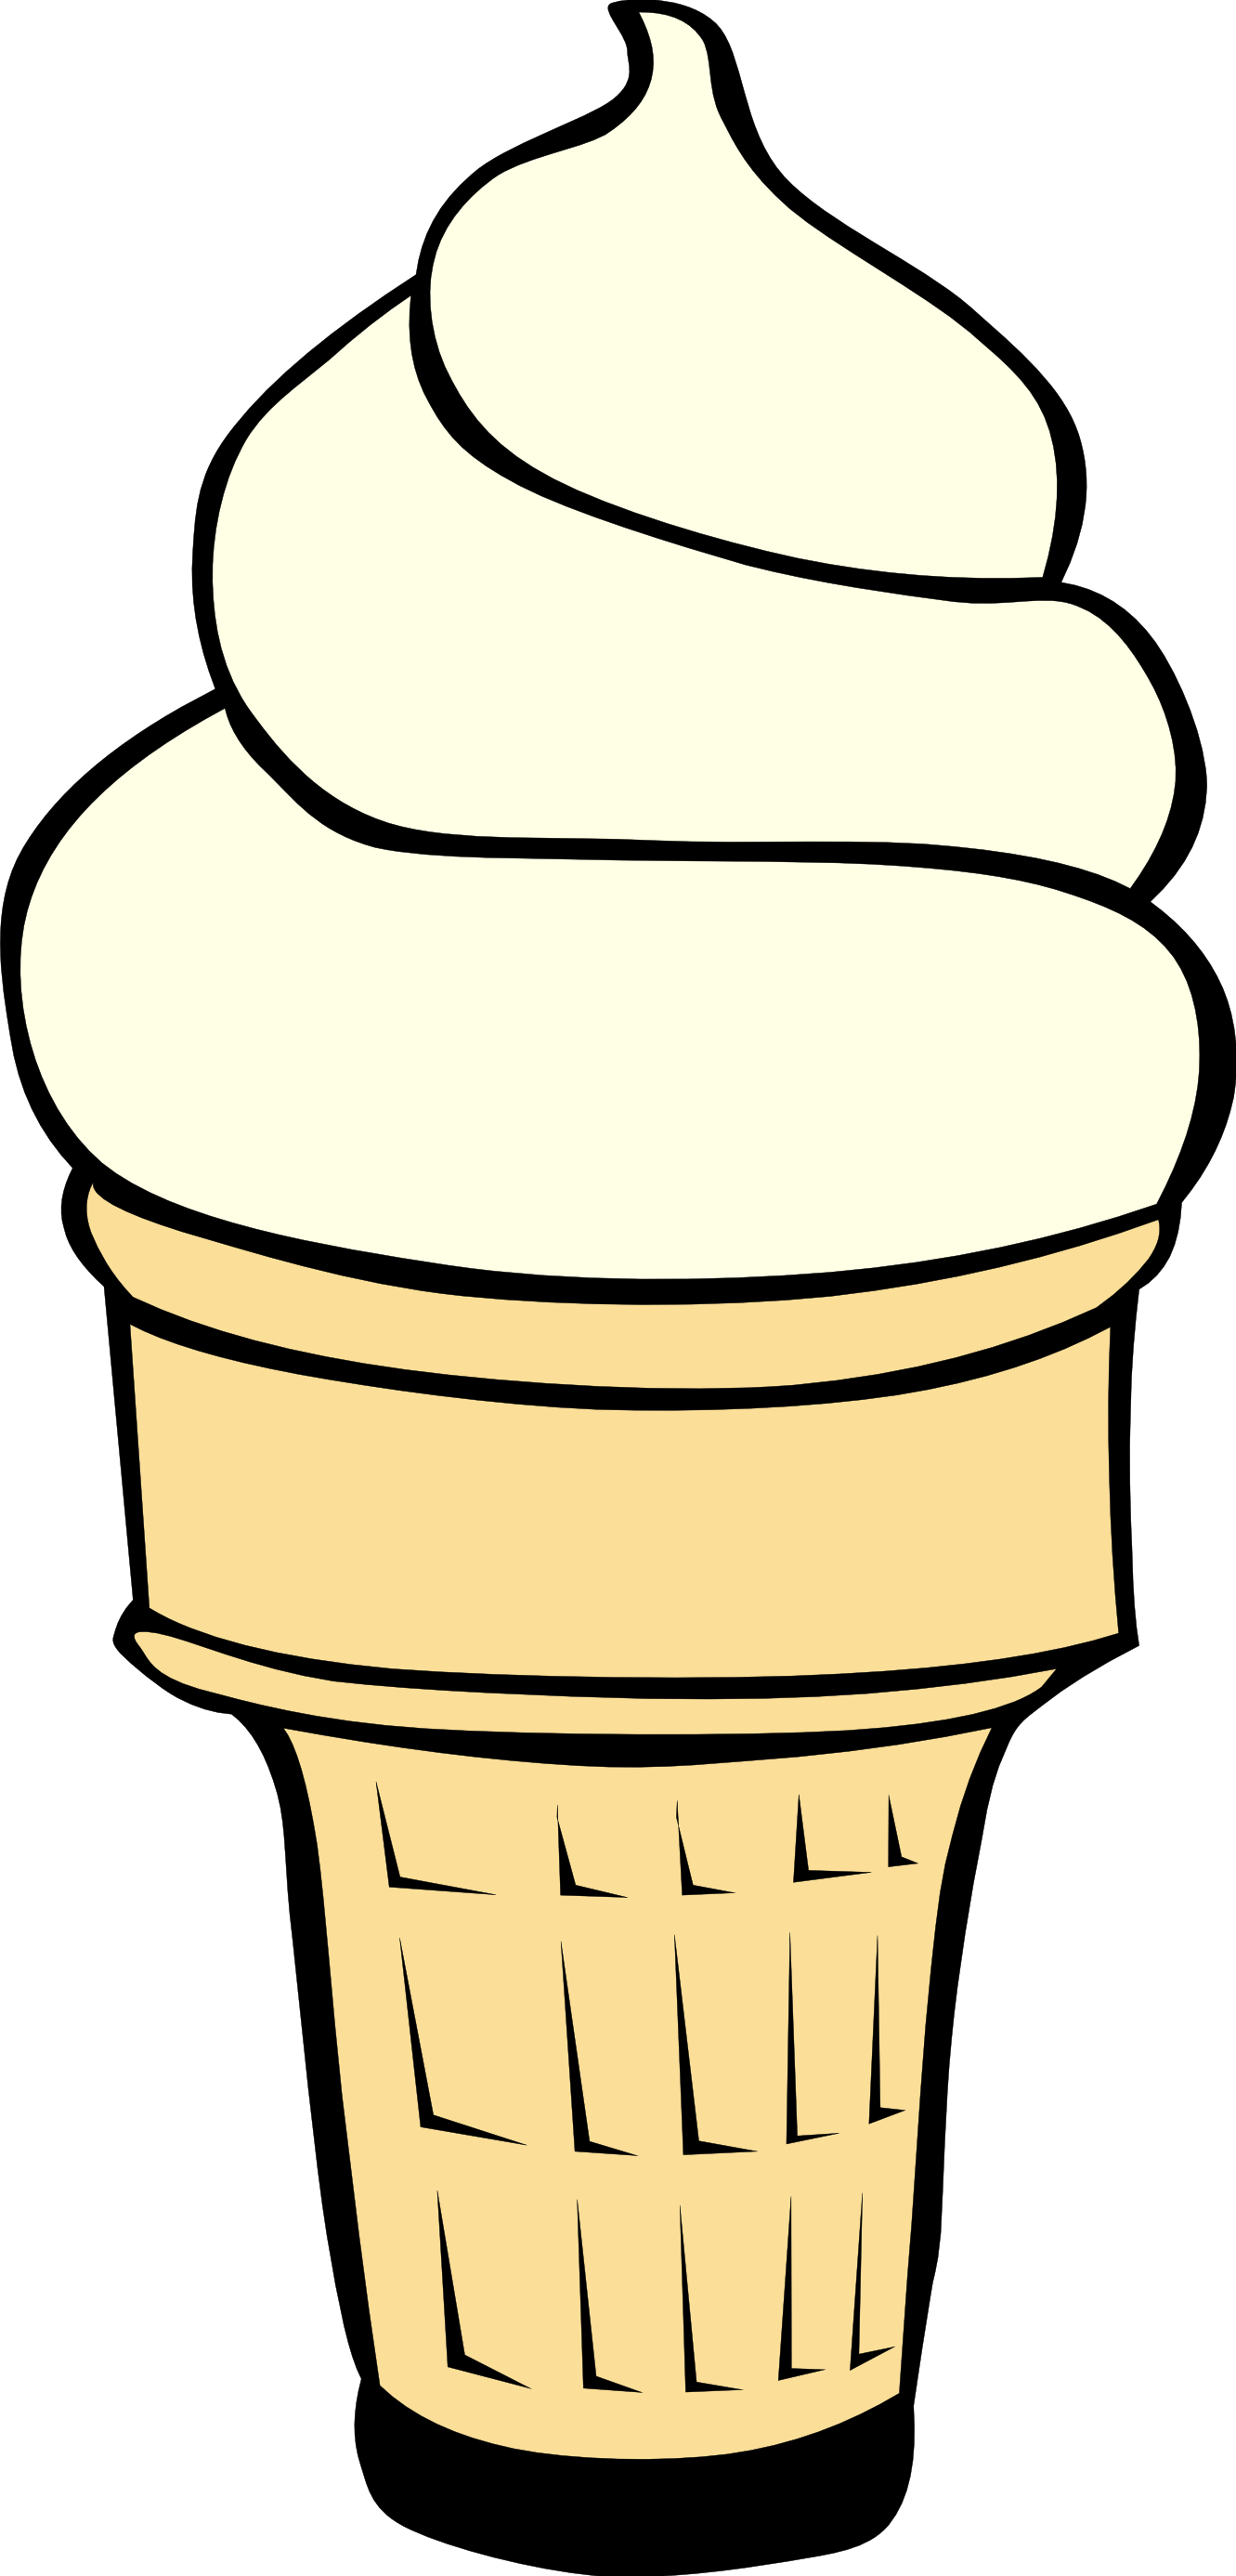 Ice cream cone clipart free images 5